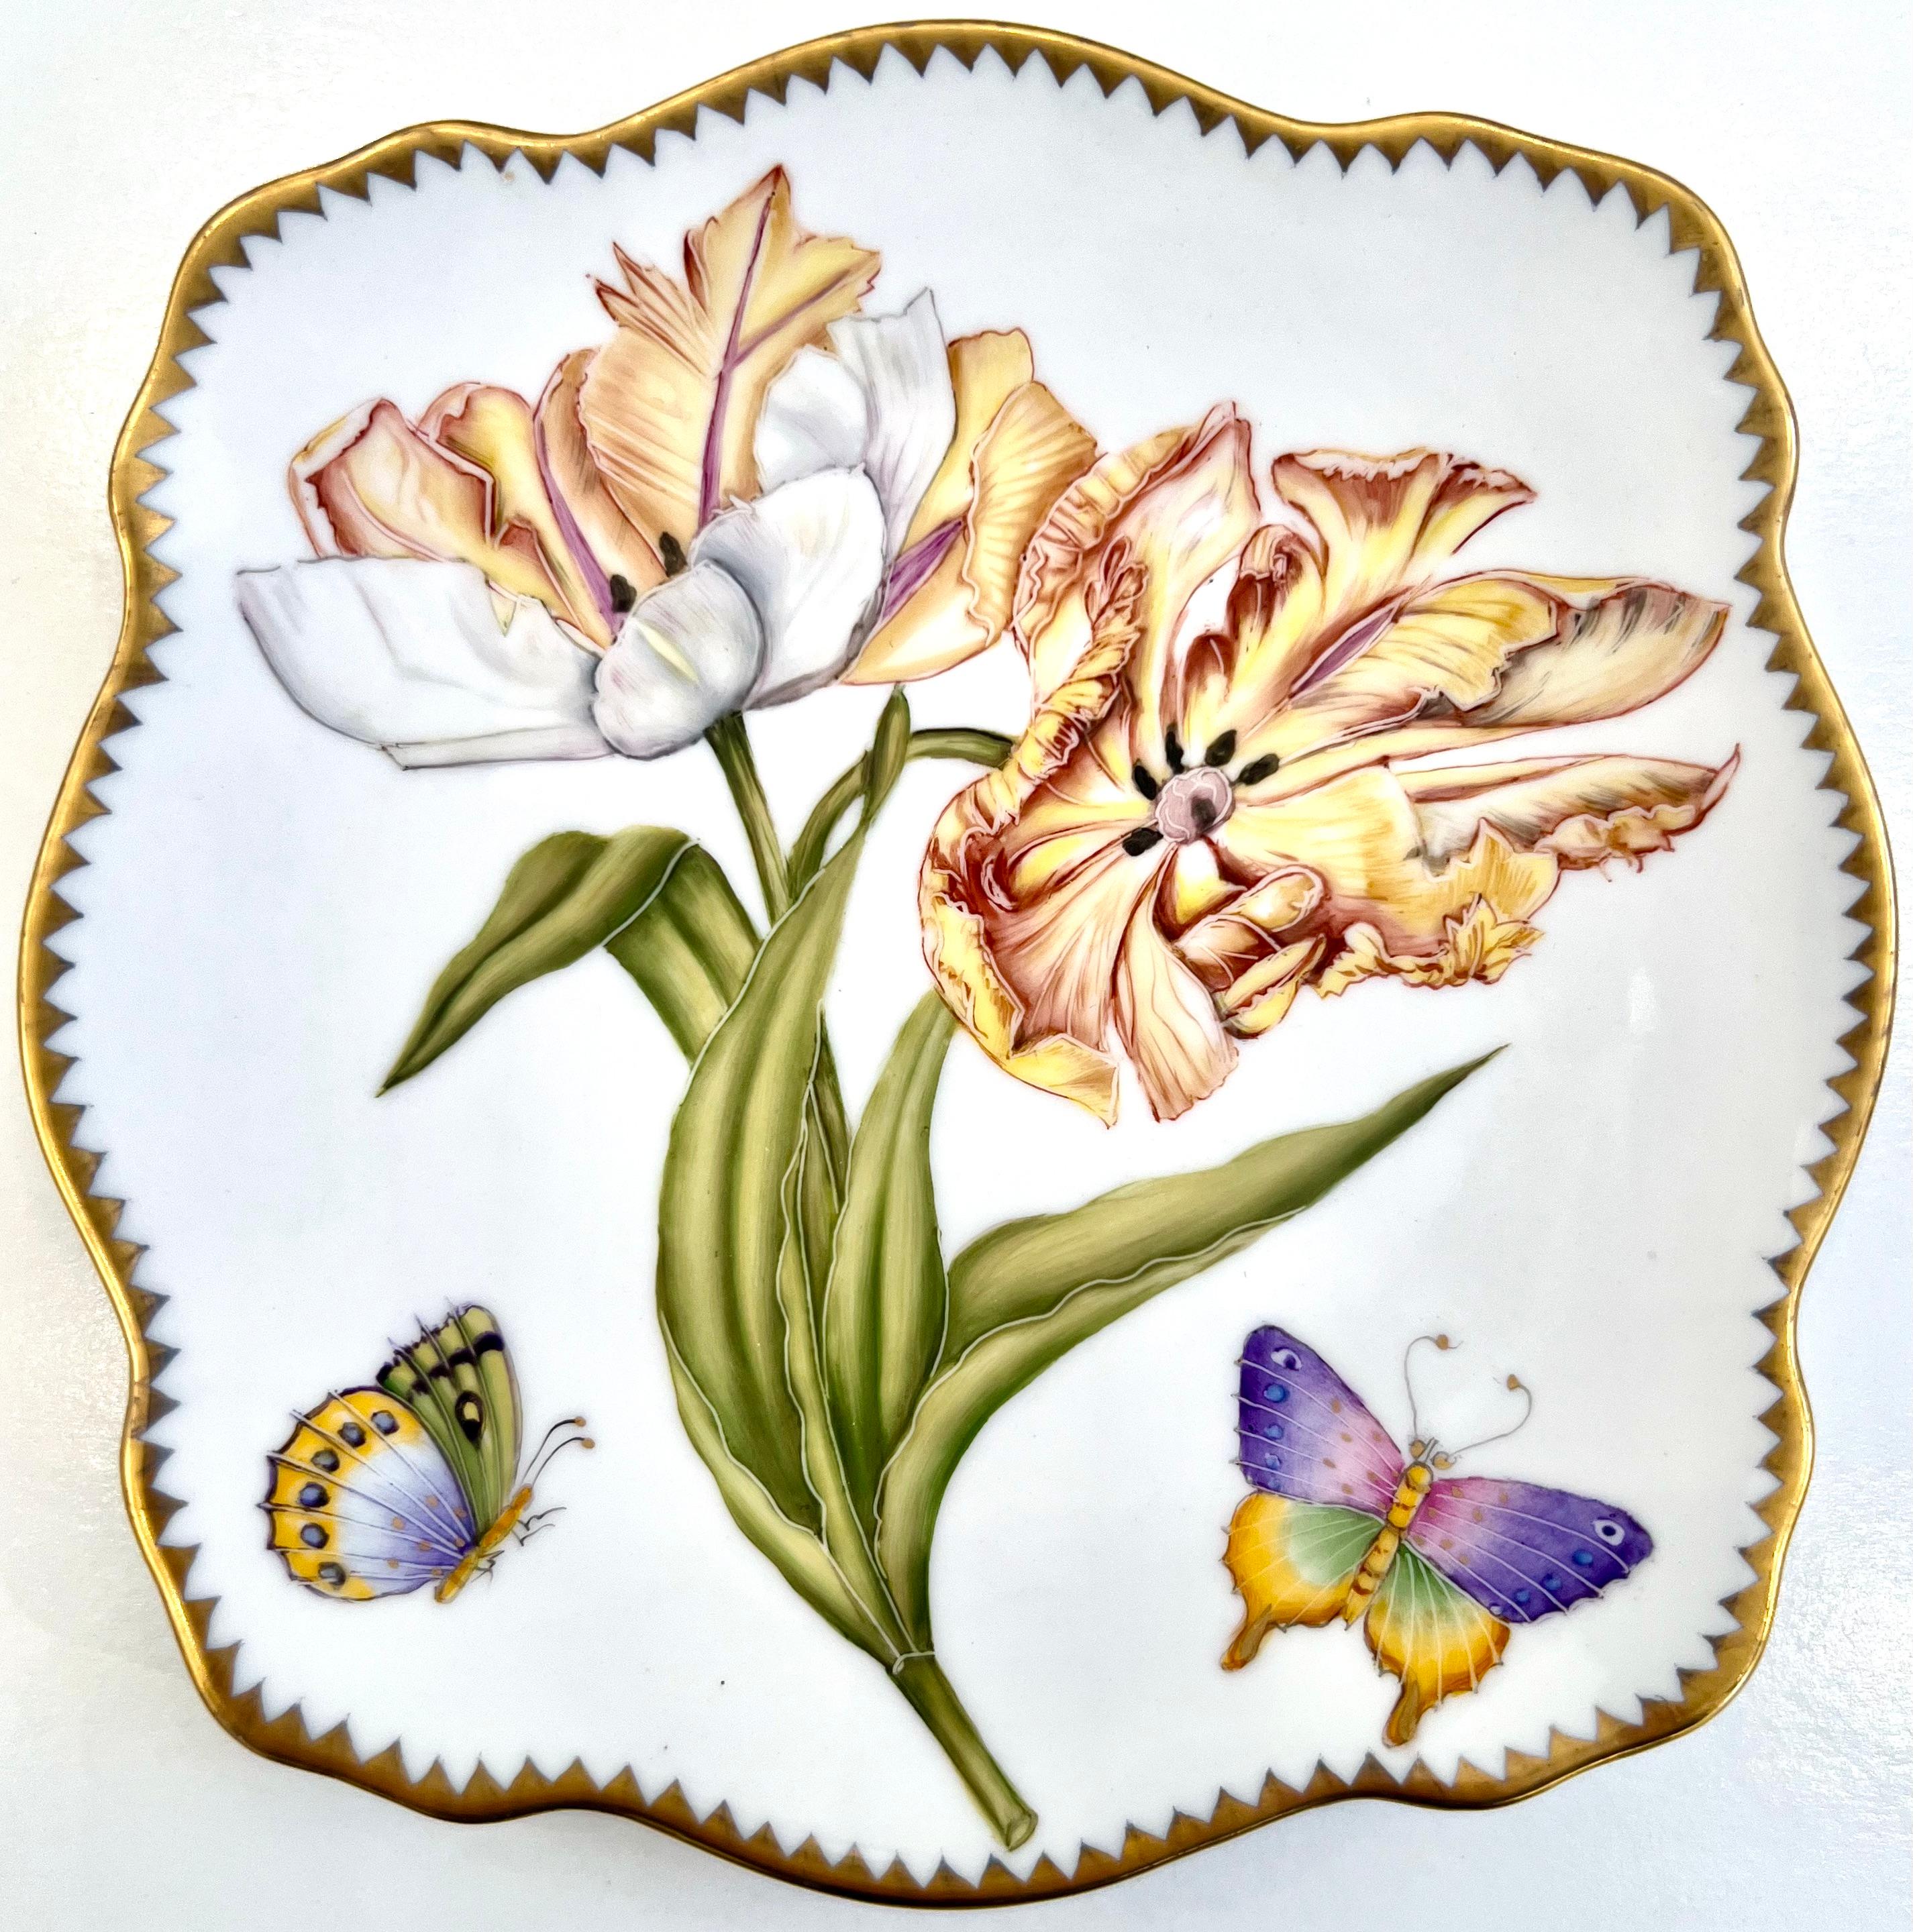 S'inspirant de l'art botanique des XVIIe et XVIIIe siècles, les designs d'Anna Weatherley Designs sont créés par ses maîtres peintres qui utilisent un style de peinture à main levée dans son Studio de Budapest. Une technique traditionnelle qui est